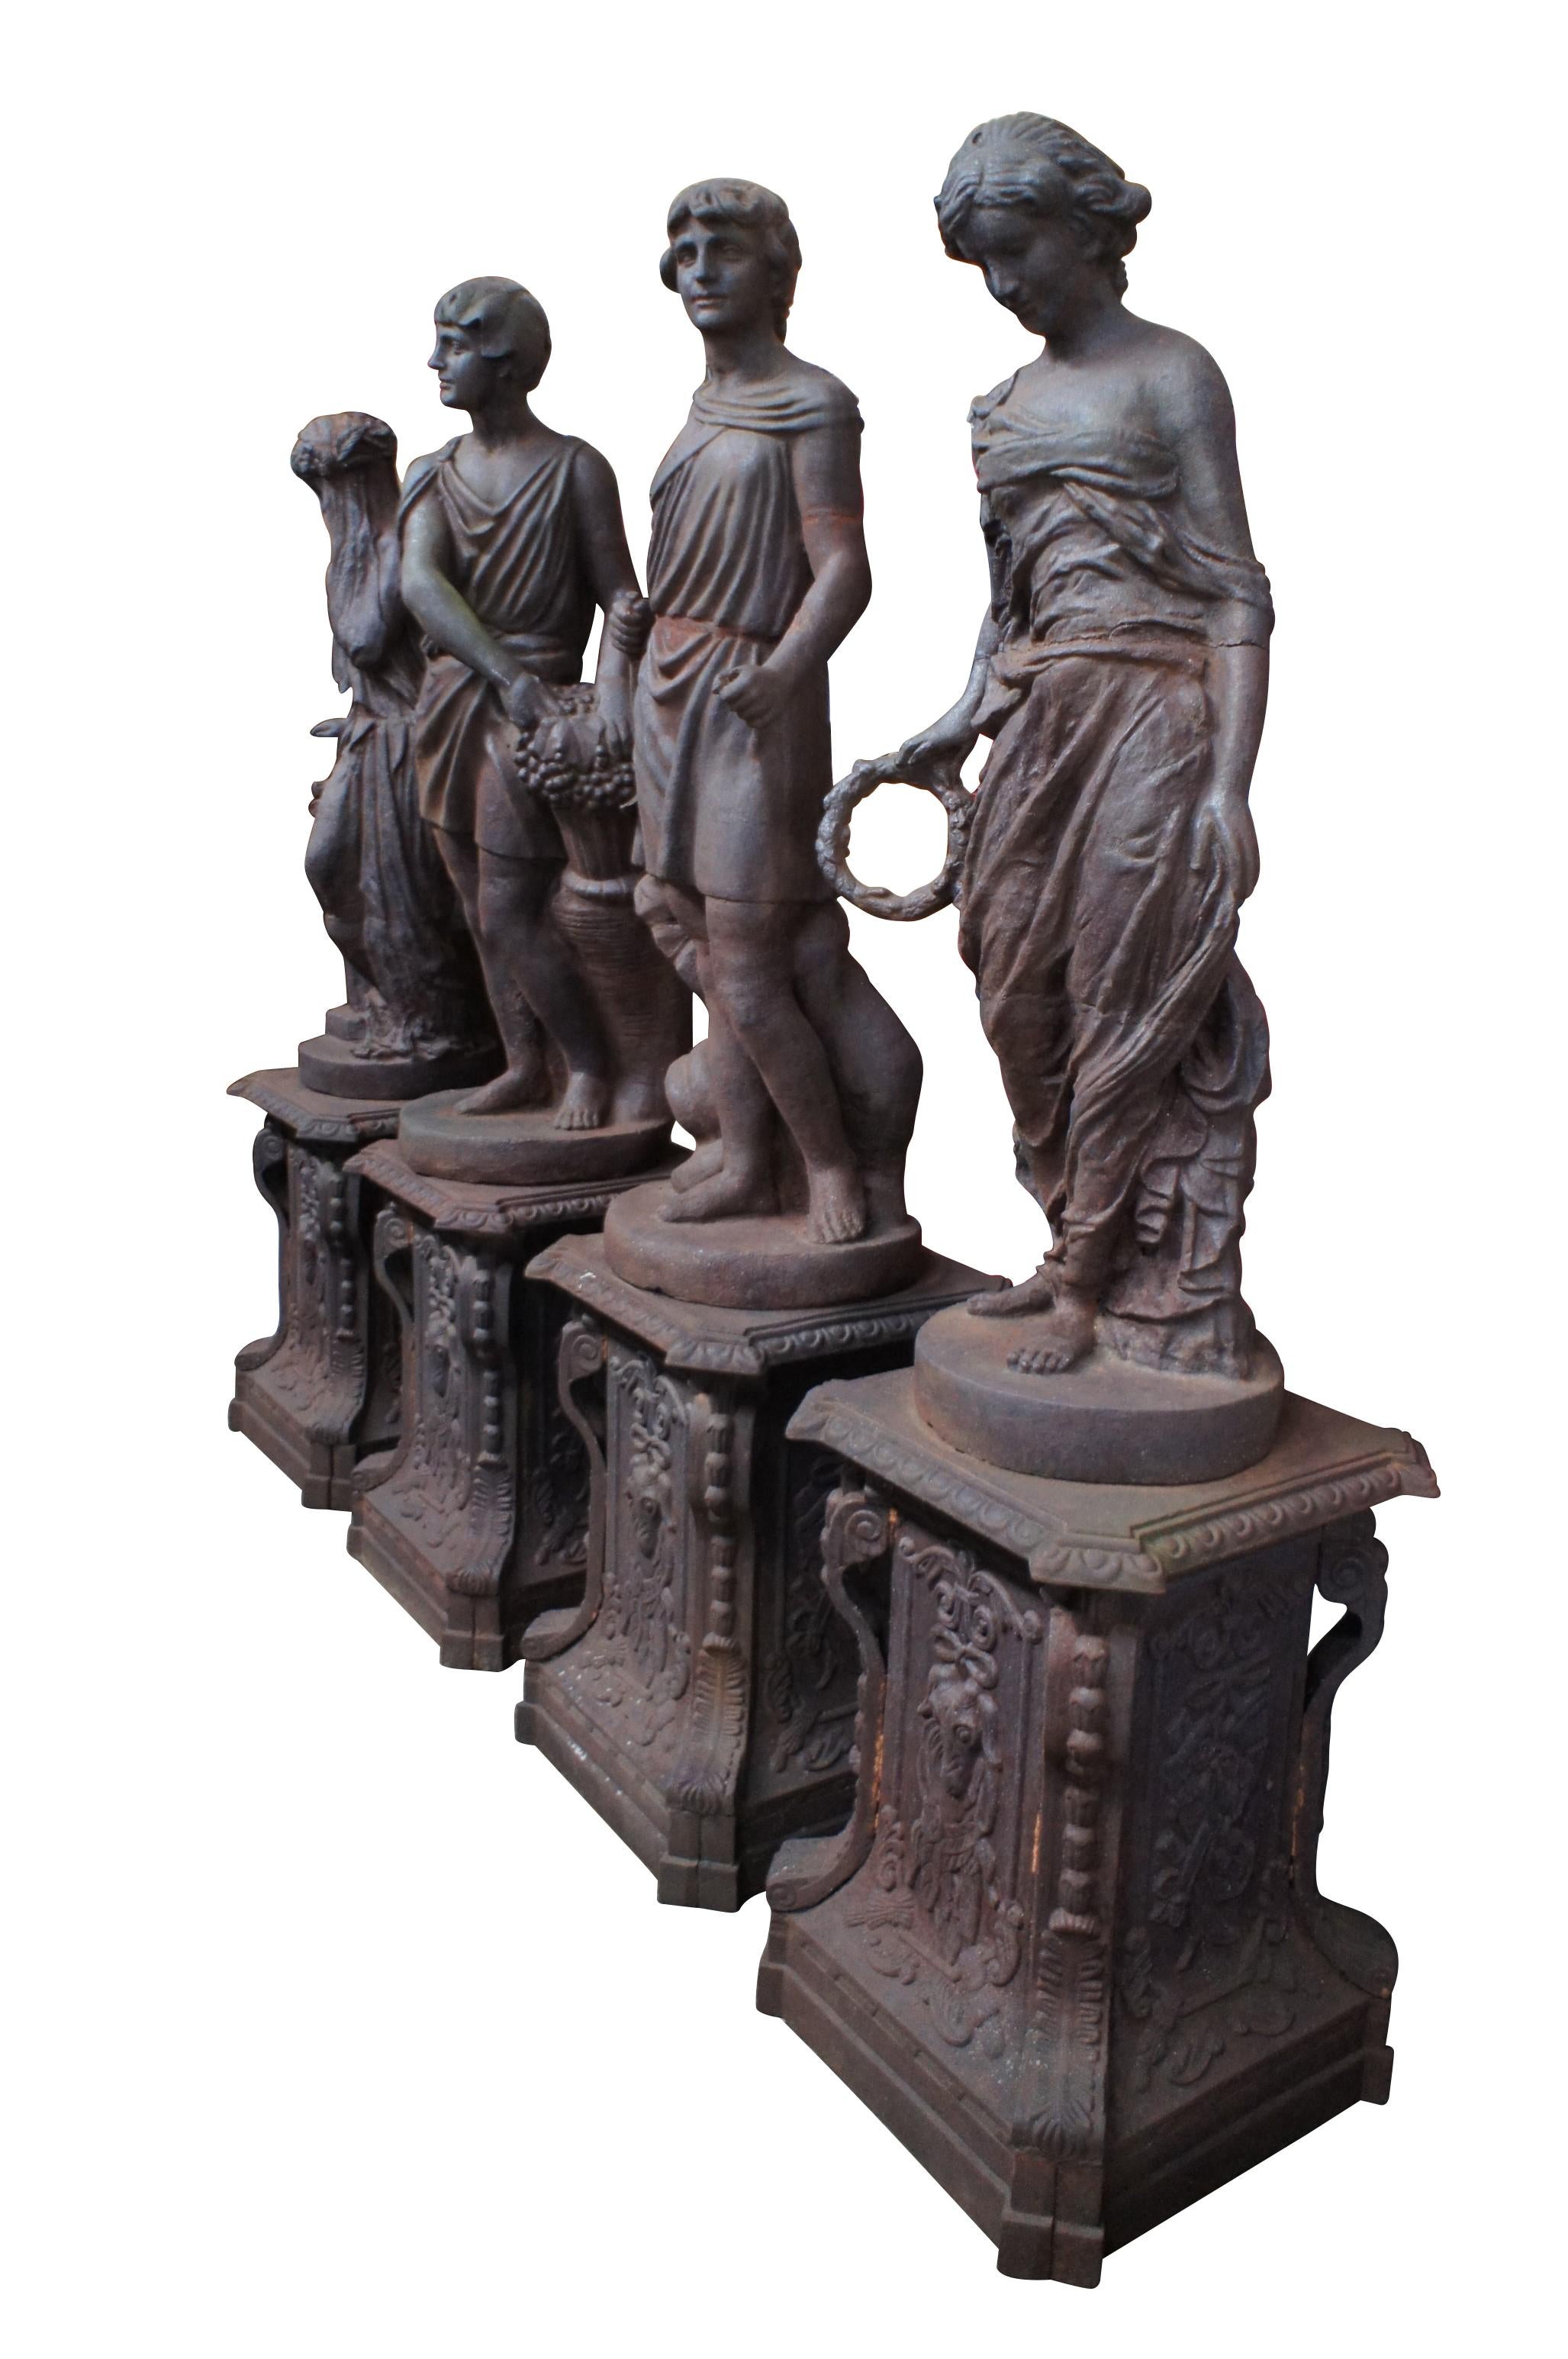 Grec classique 4 Statues de jardin Four Seasons en fonte vintage Figures Sculptures Pedestals 90